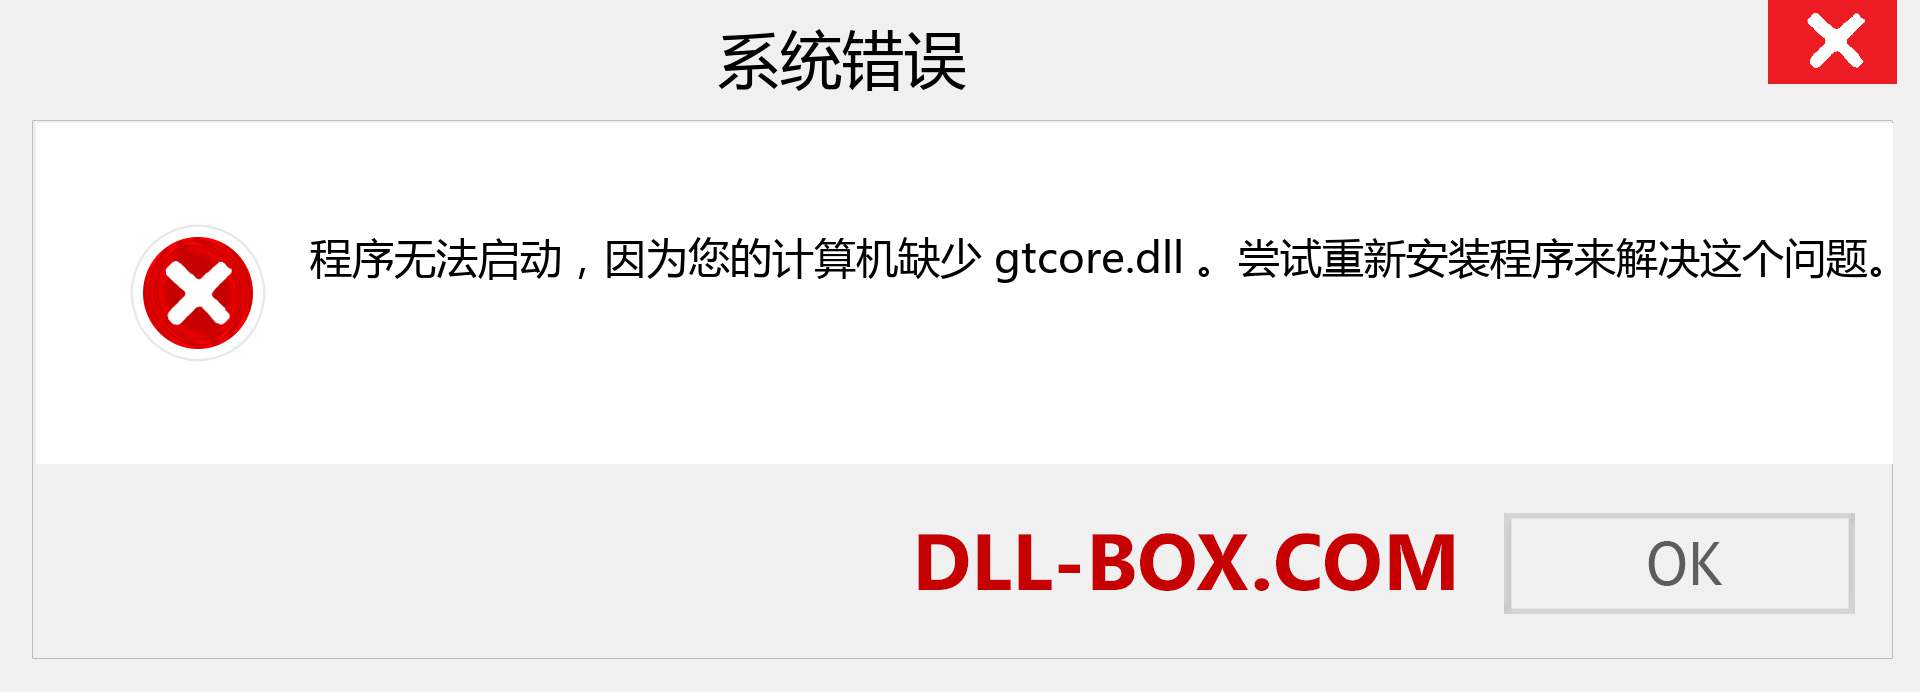 gtcore.dll 文件丢失？。 适用于 Windows 7、8、10 的下载 - 修复 Windows、照片、图像上的 gtcore dll 丢失错误